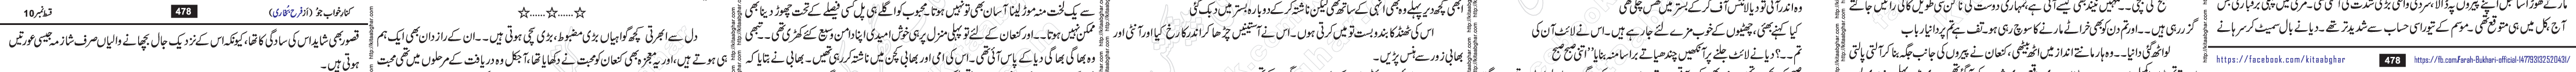 Kinar Khawab Jo Last Episode 11 Urdu Novel by Farah Bukhari